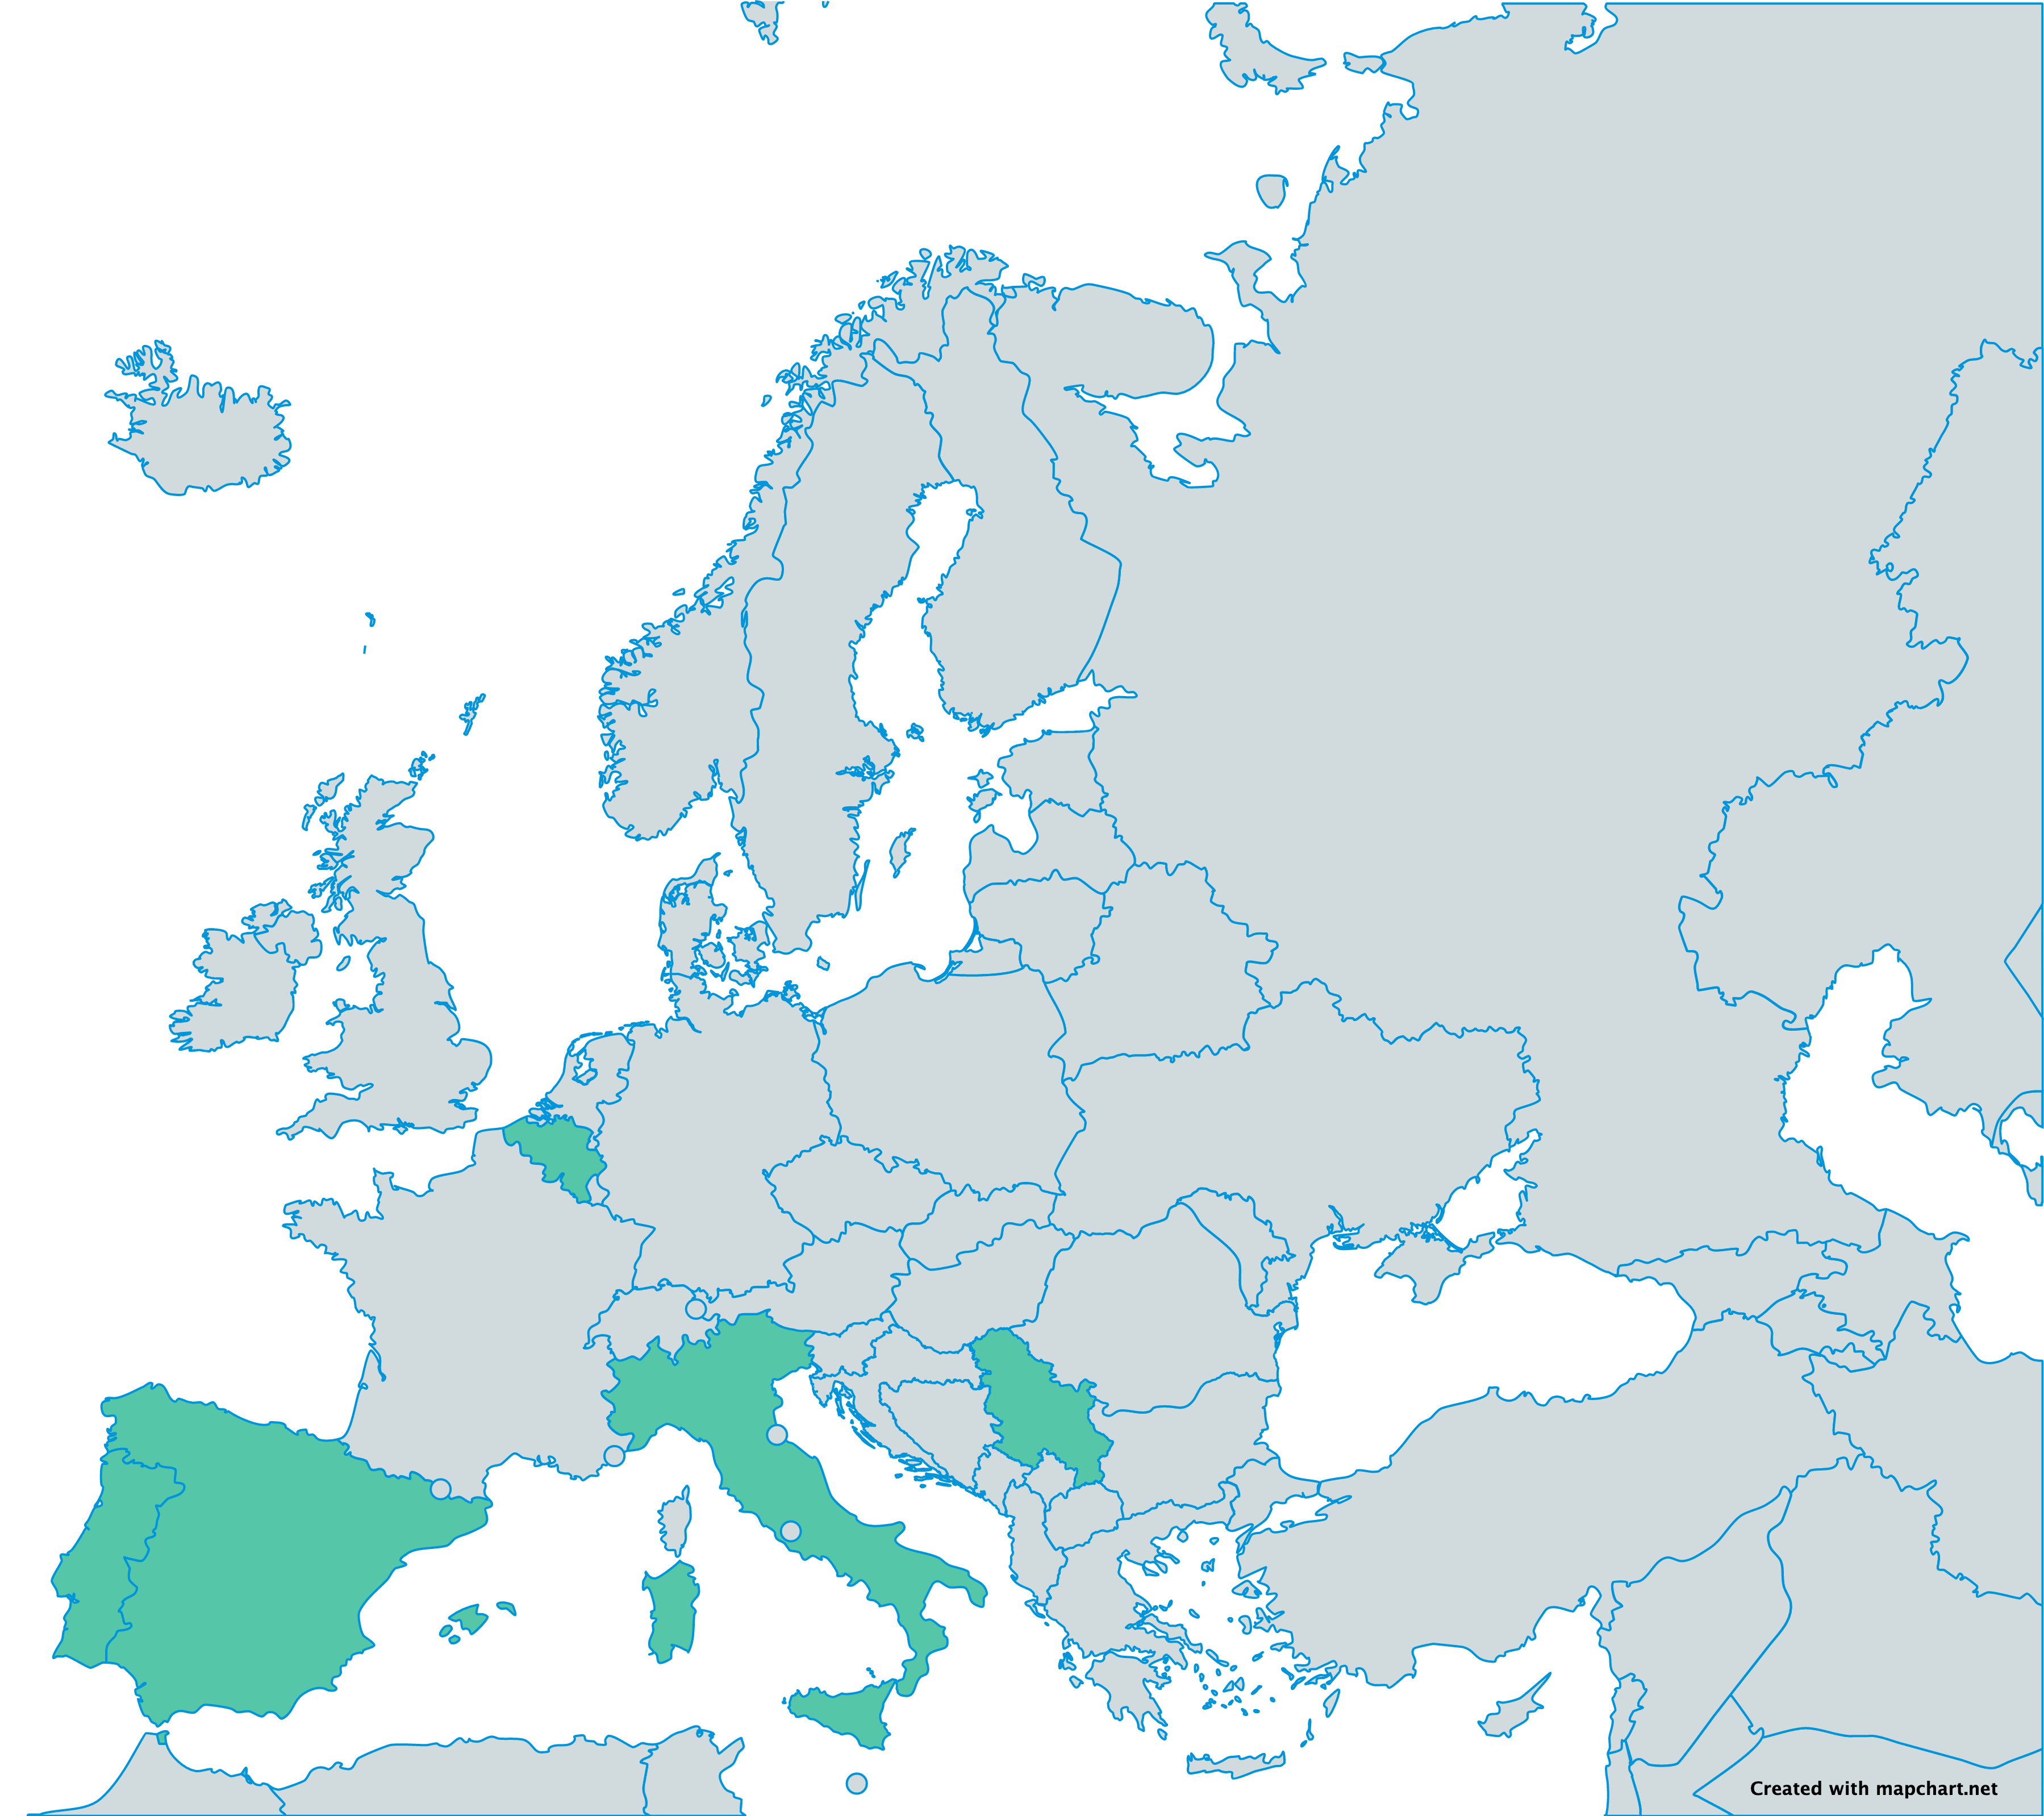 Mappa partner progetto Erasmus+ IPA 2